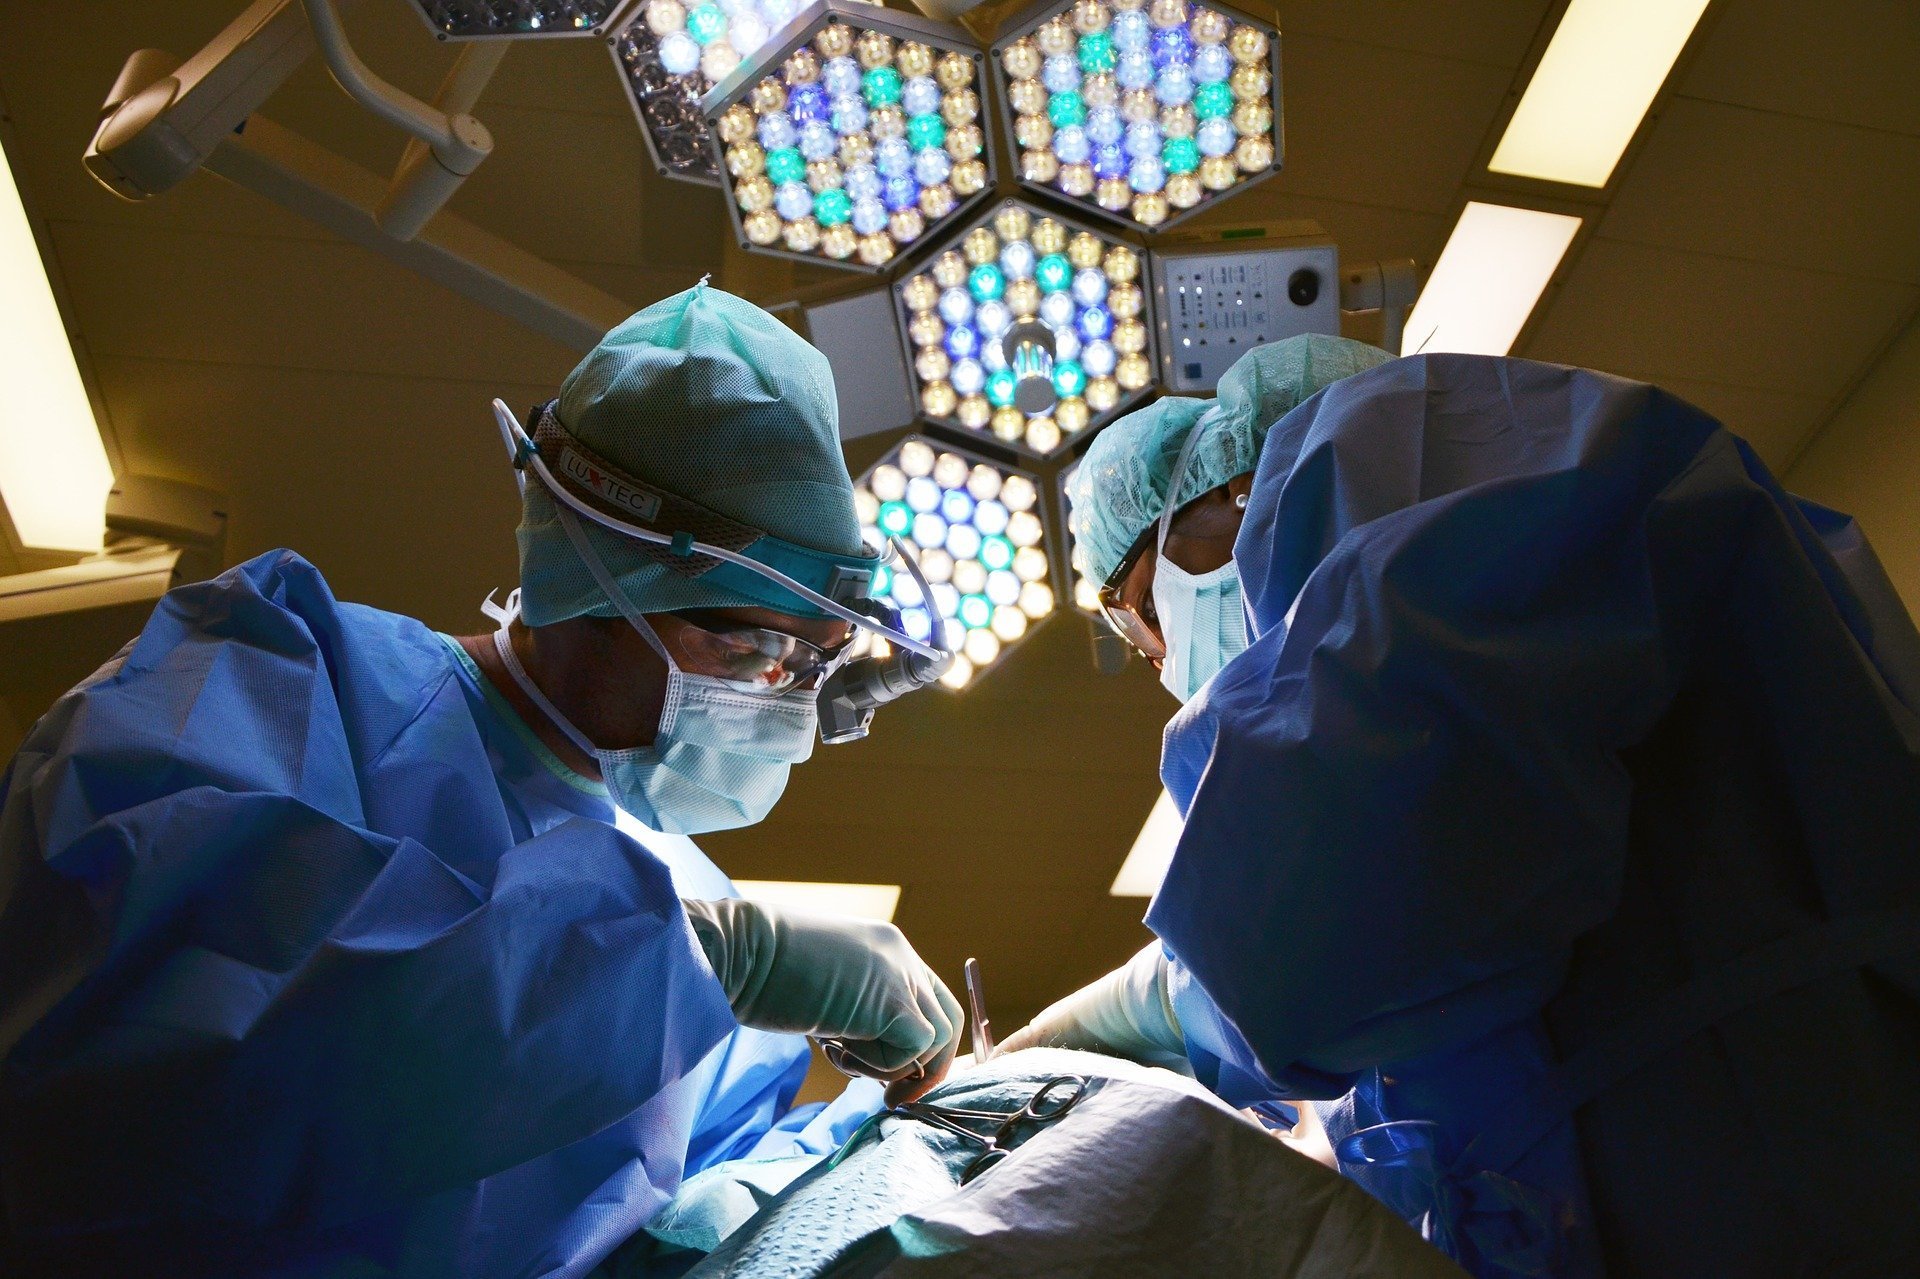 

В Ижевске возобновили операции по пересадке роговой оболочки

